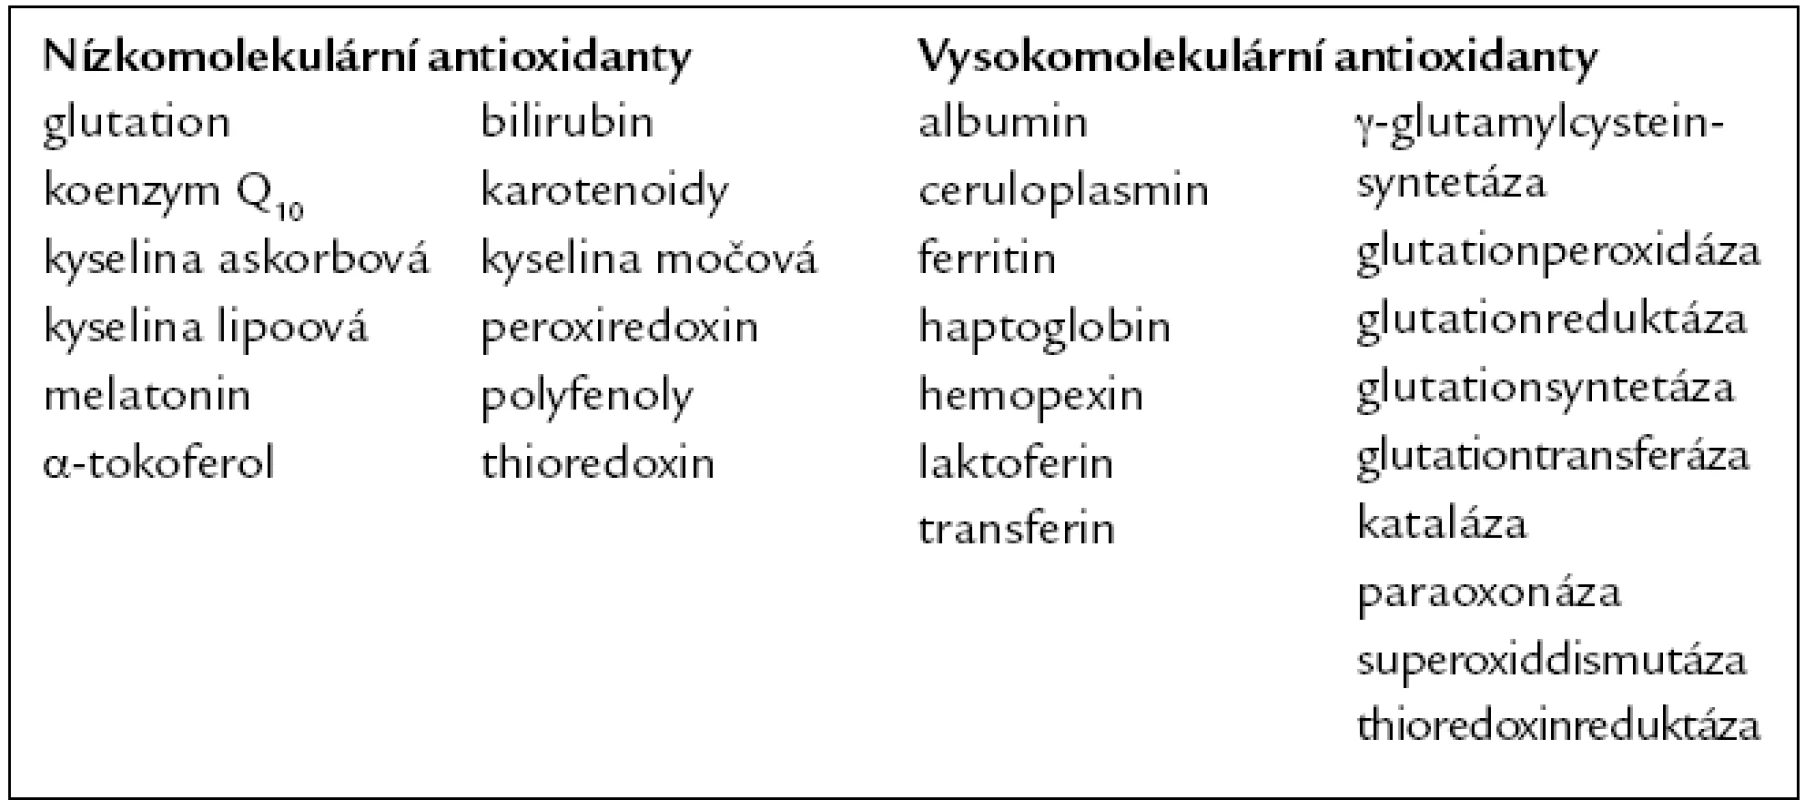 Hlavní součásti antioxidační kapacity. Upraveno podle [7].